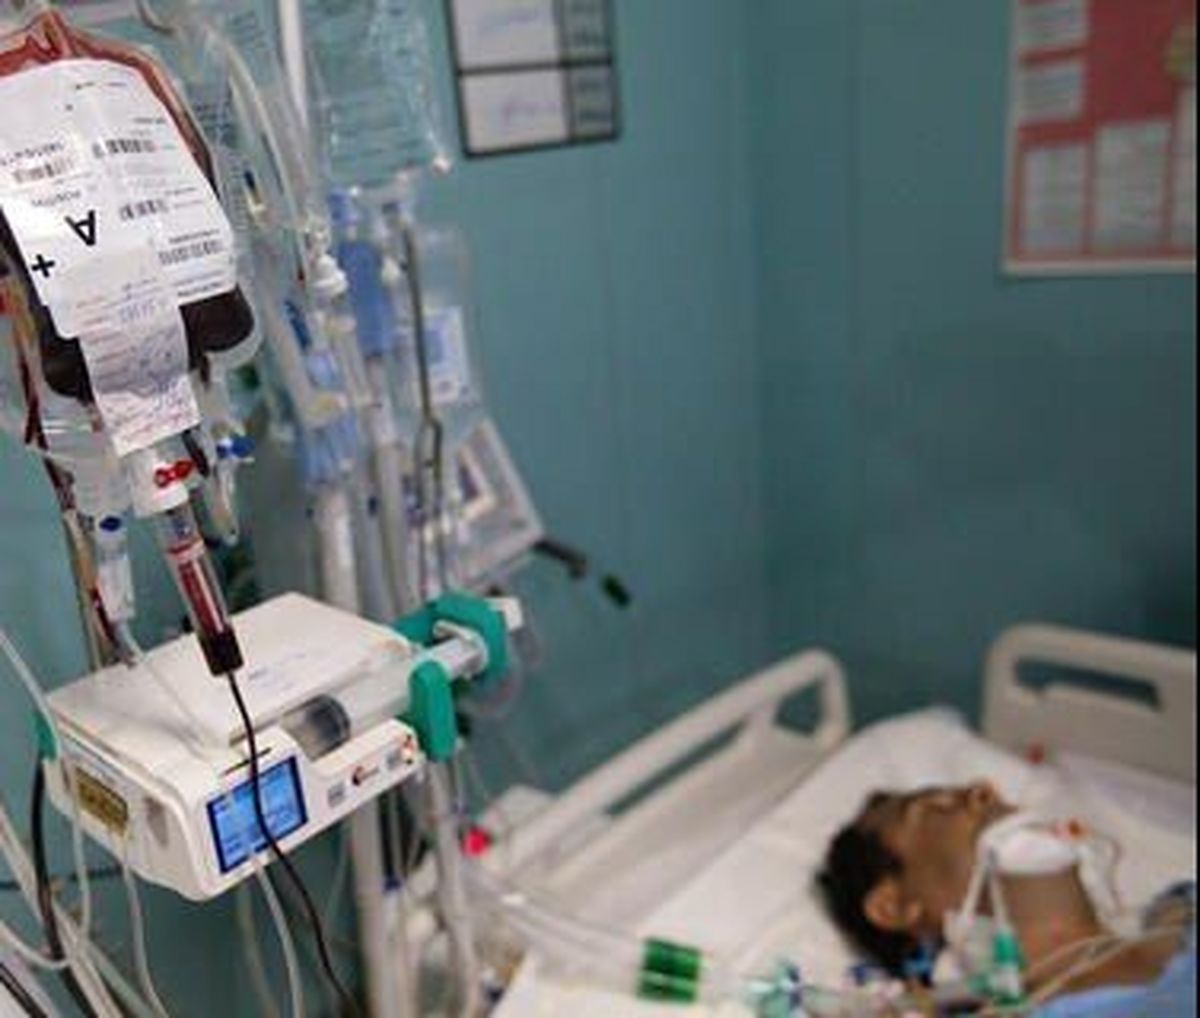 پدر کیان پیرفلک برای ادامه روند درمان به تهران اعزام شد